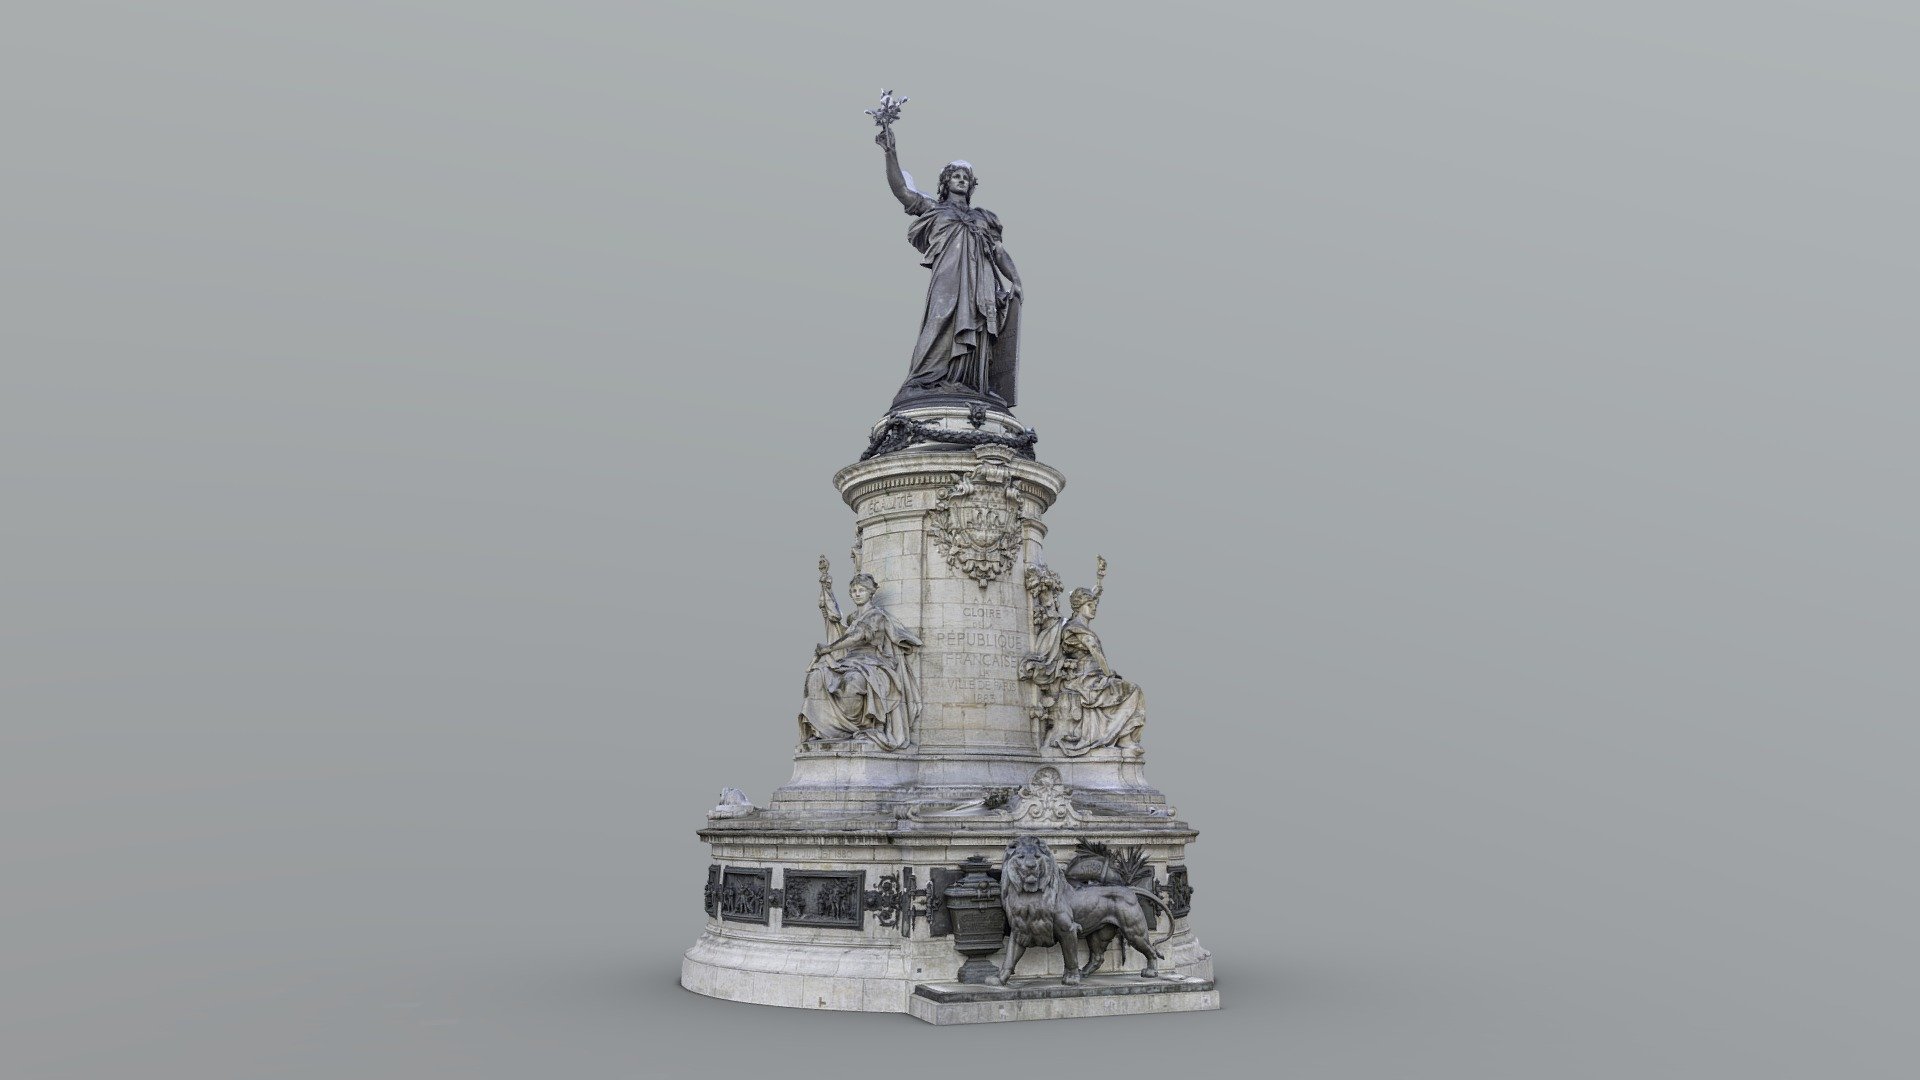 High poly model of the Monument à la République located on the &ldquo;Place de la République